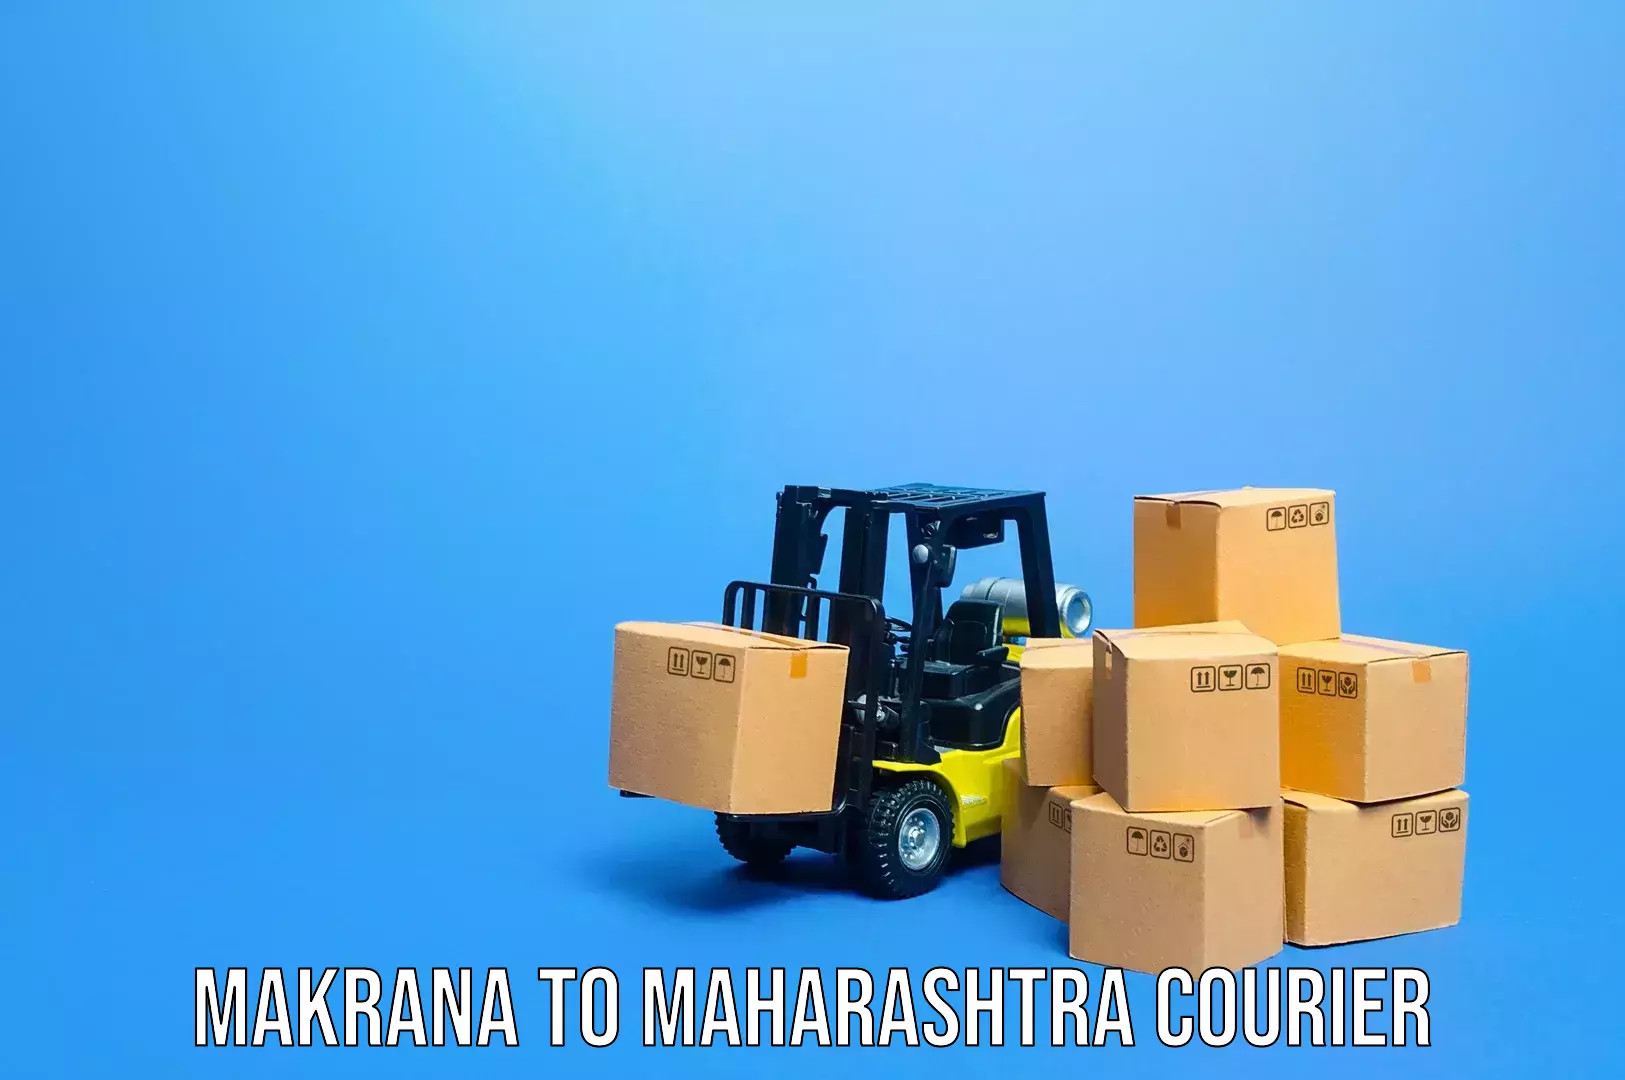 Luggage transport consultancy Makrana to Maharashtra